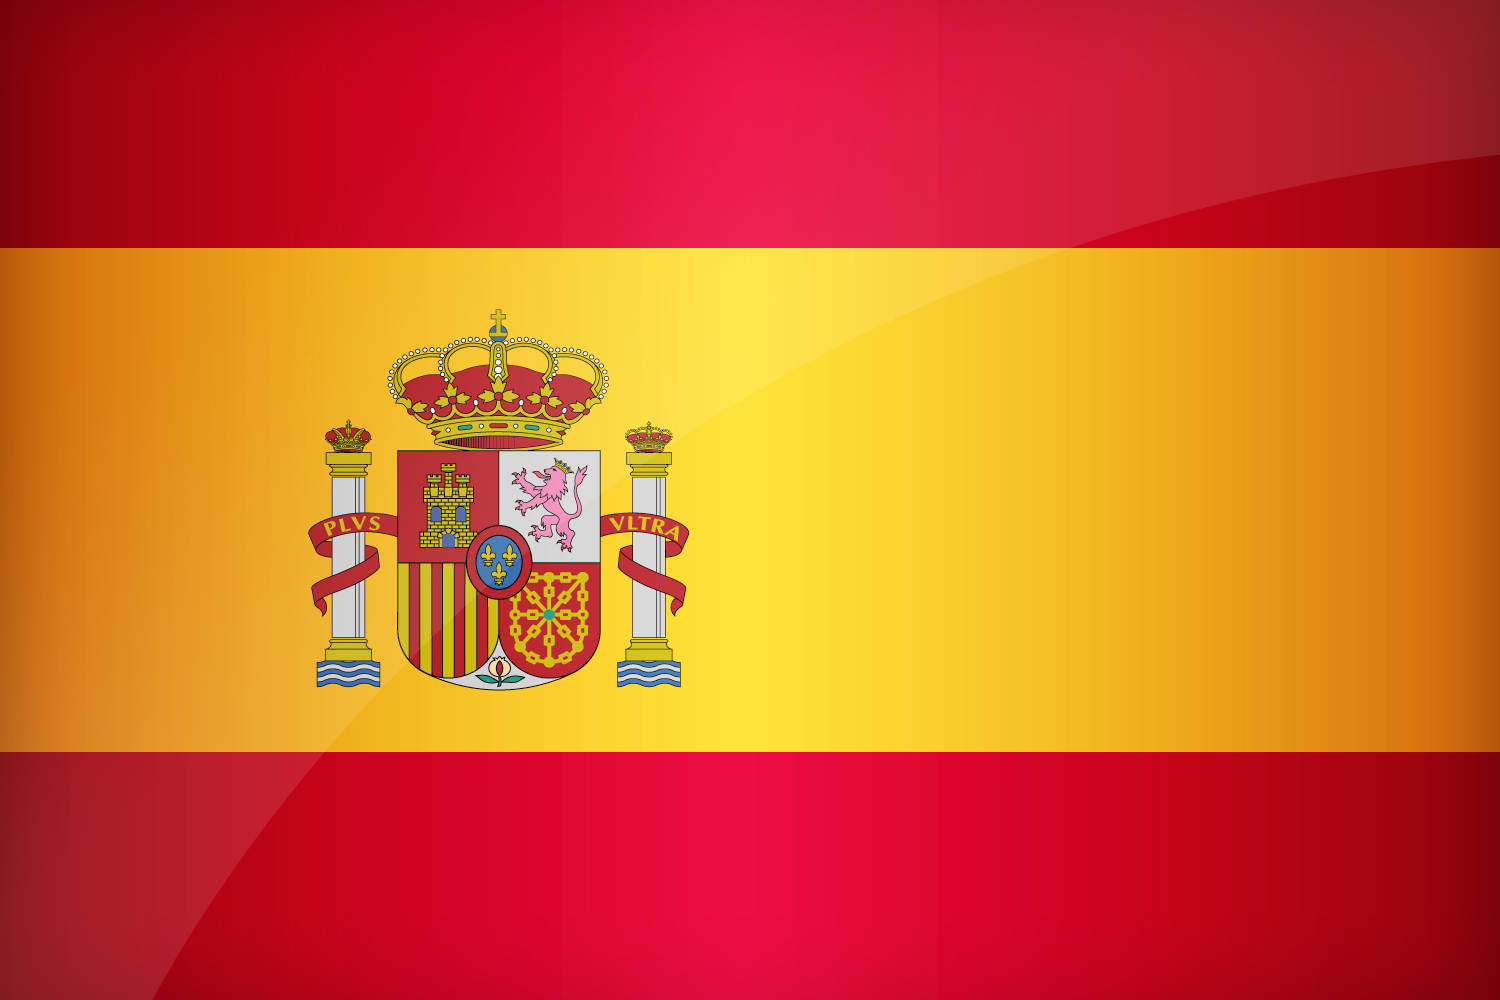 Флаг Испании Фото И Герб Telegraph